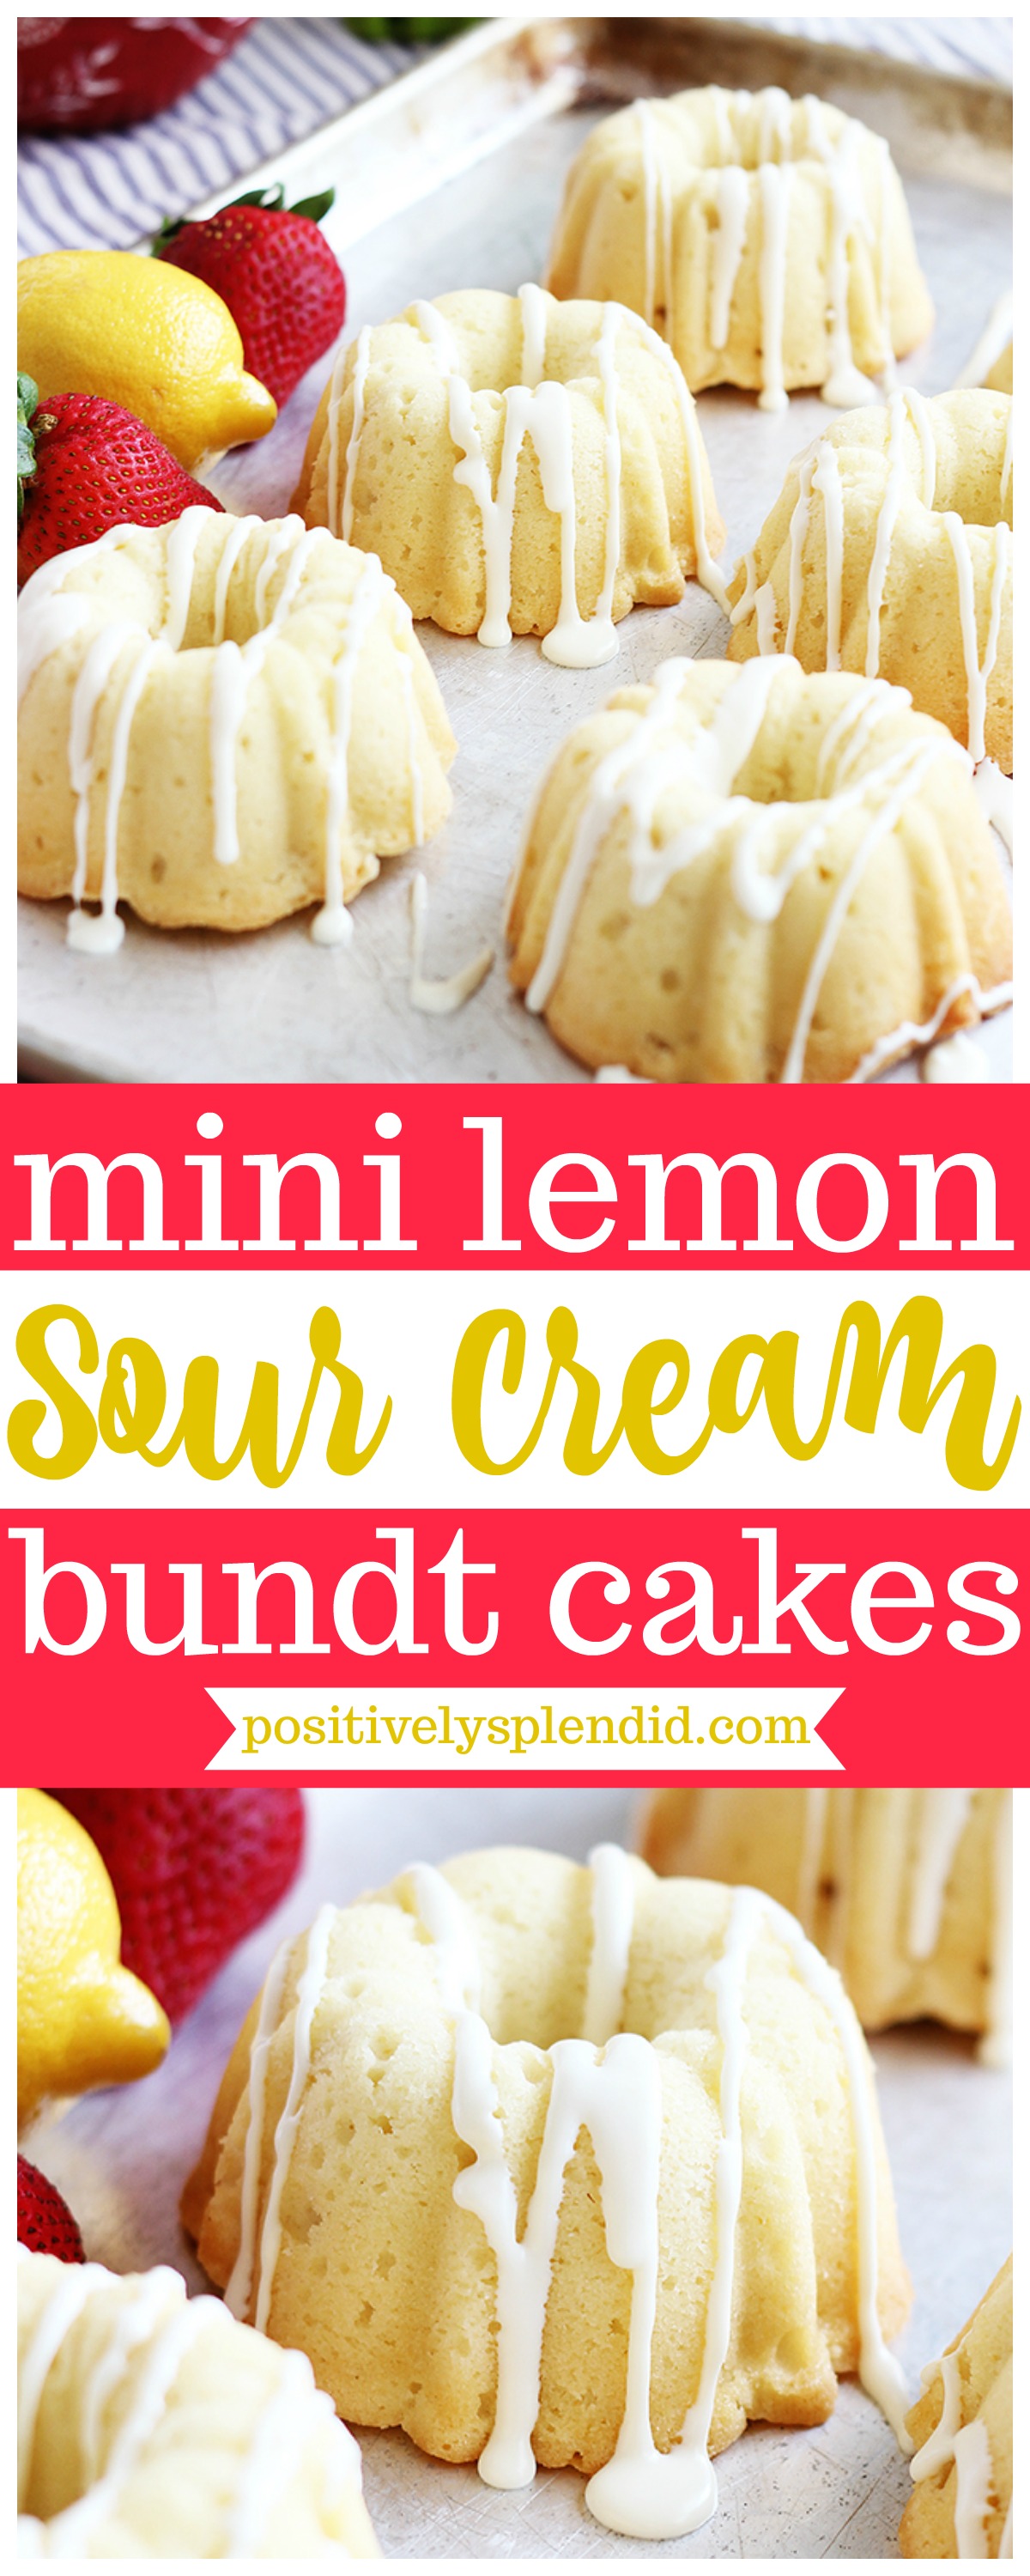 https://www.positivelysplendid.com/wp-content/uploads/2018/05/Lemon-Sour-Cream-Mini-Bundt-Cake-Recipe.jpg